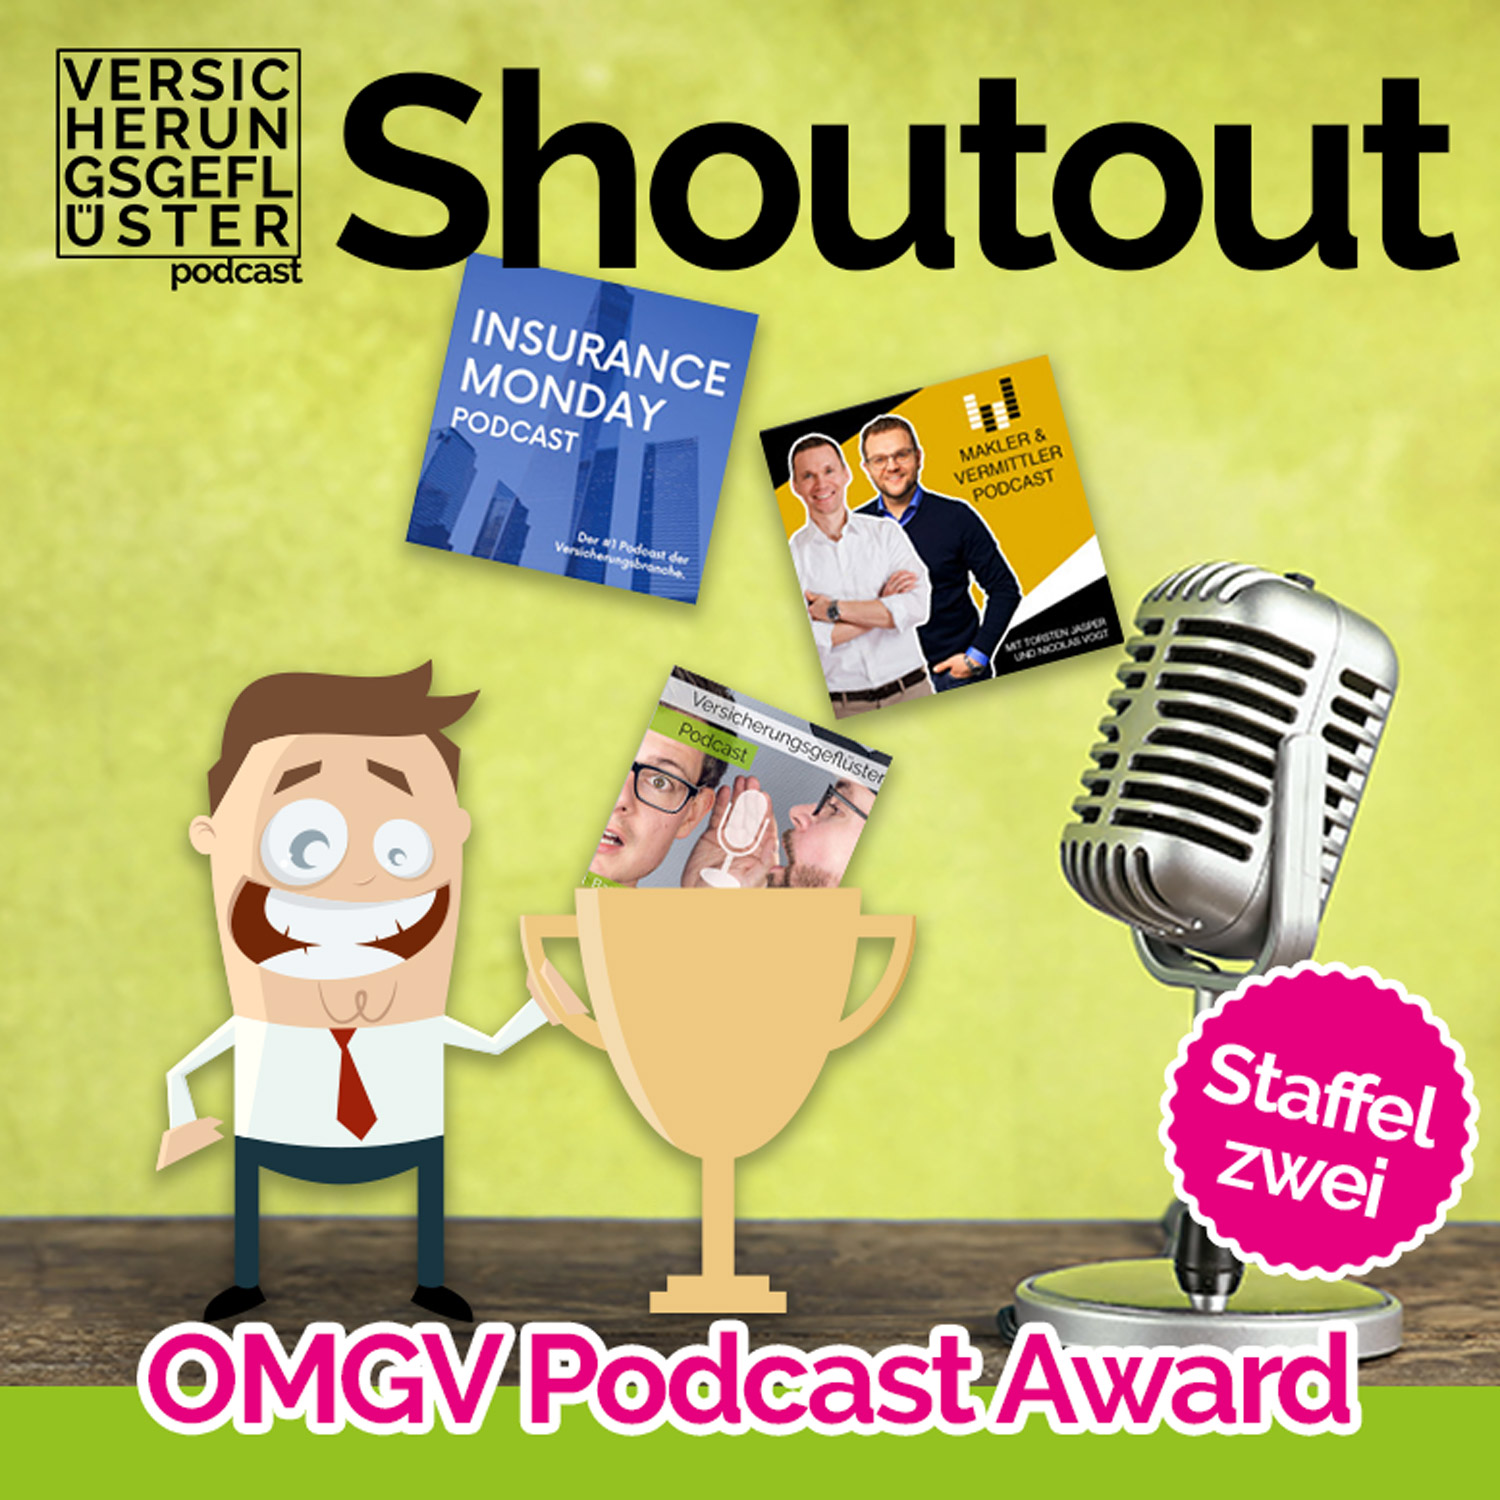 Shoutout zum OMGV-Podcast AWARD für Versicherungspodcasts